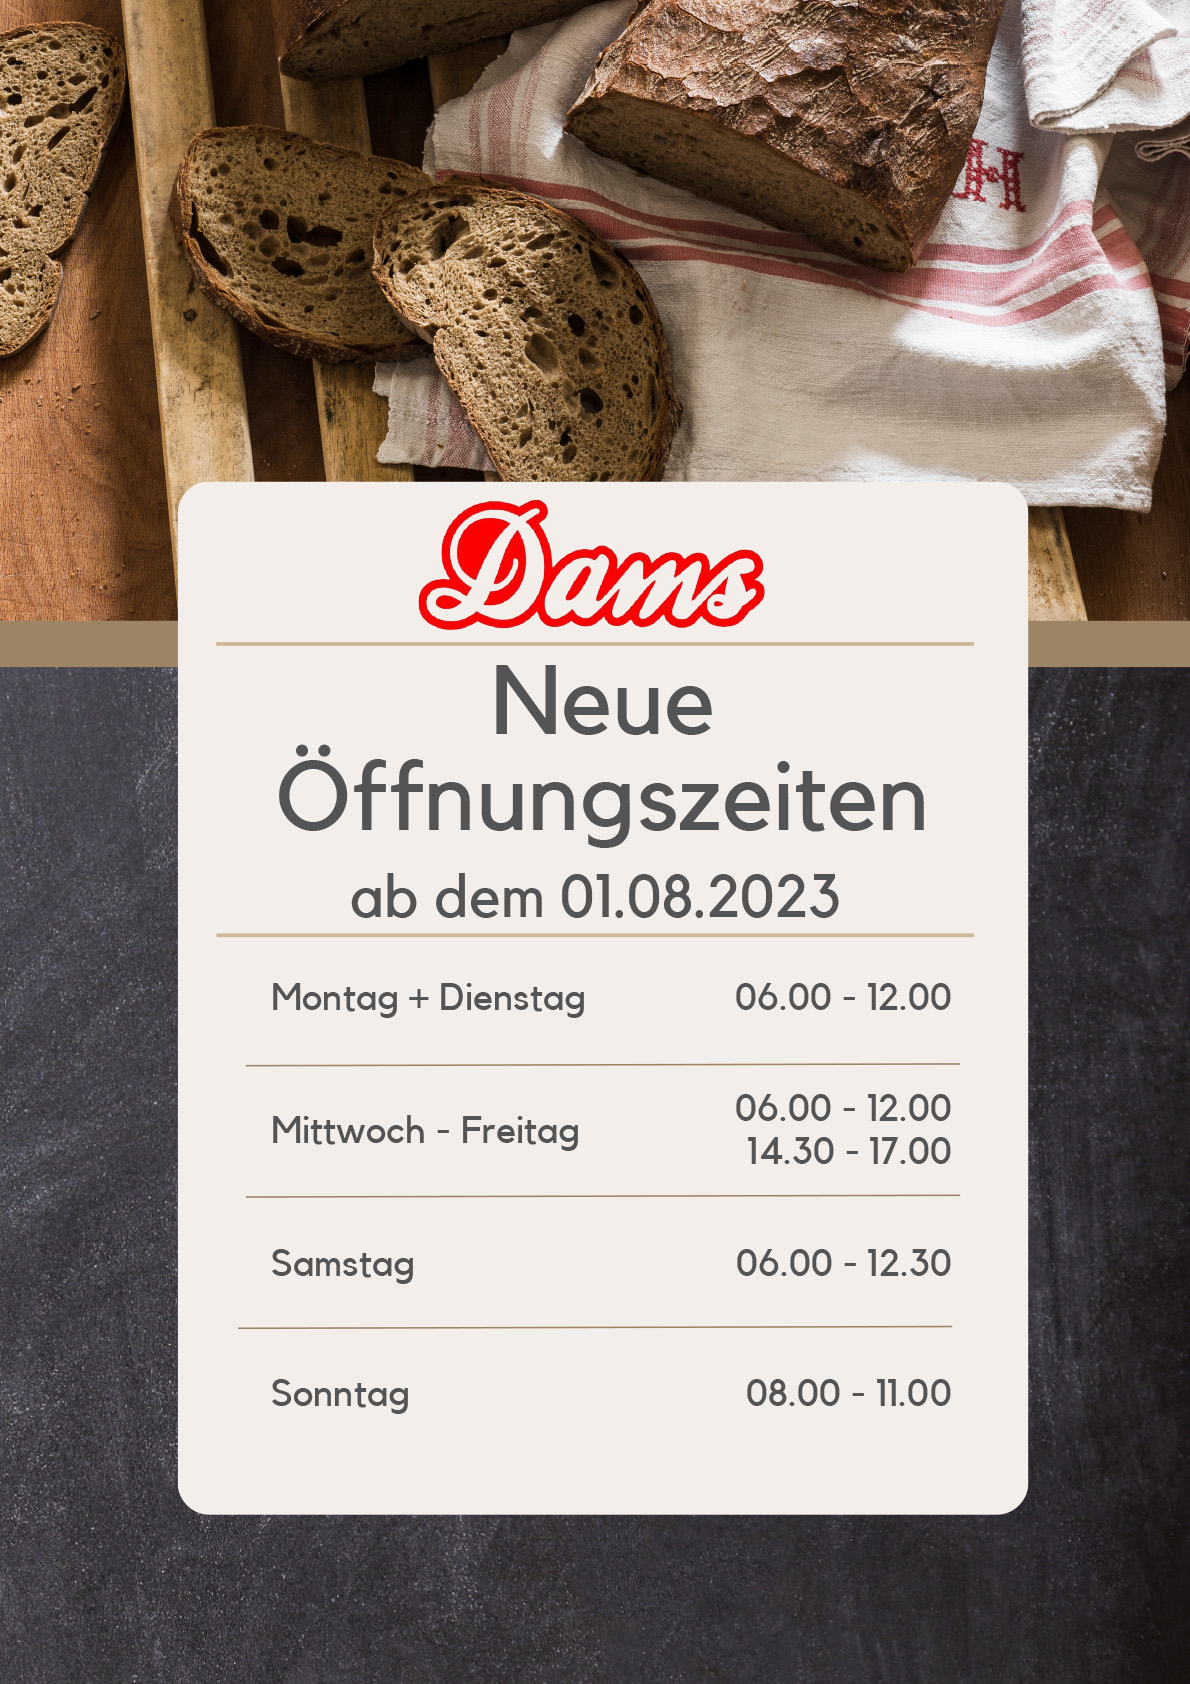 Bäckerei Dams neue Öffnungszeiten Filiale Borth